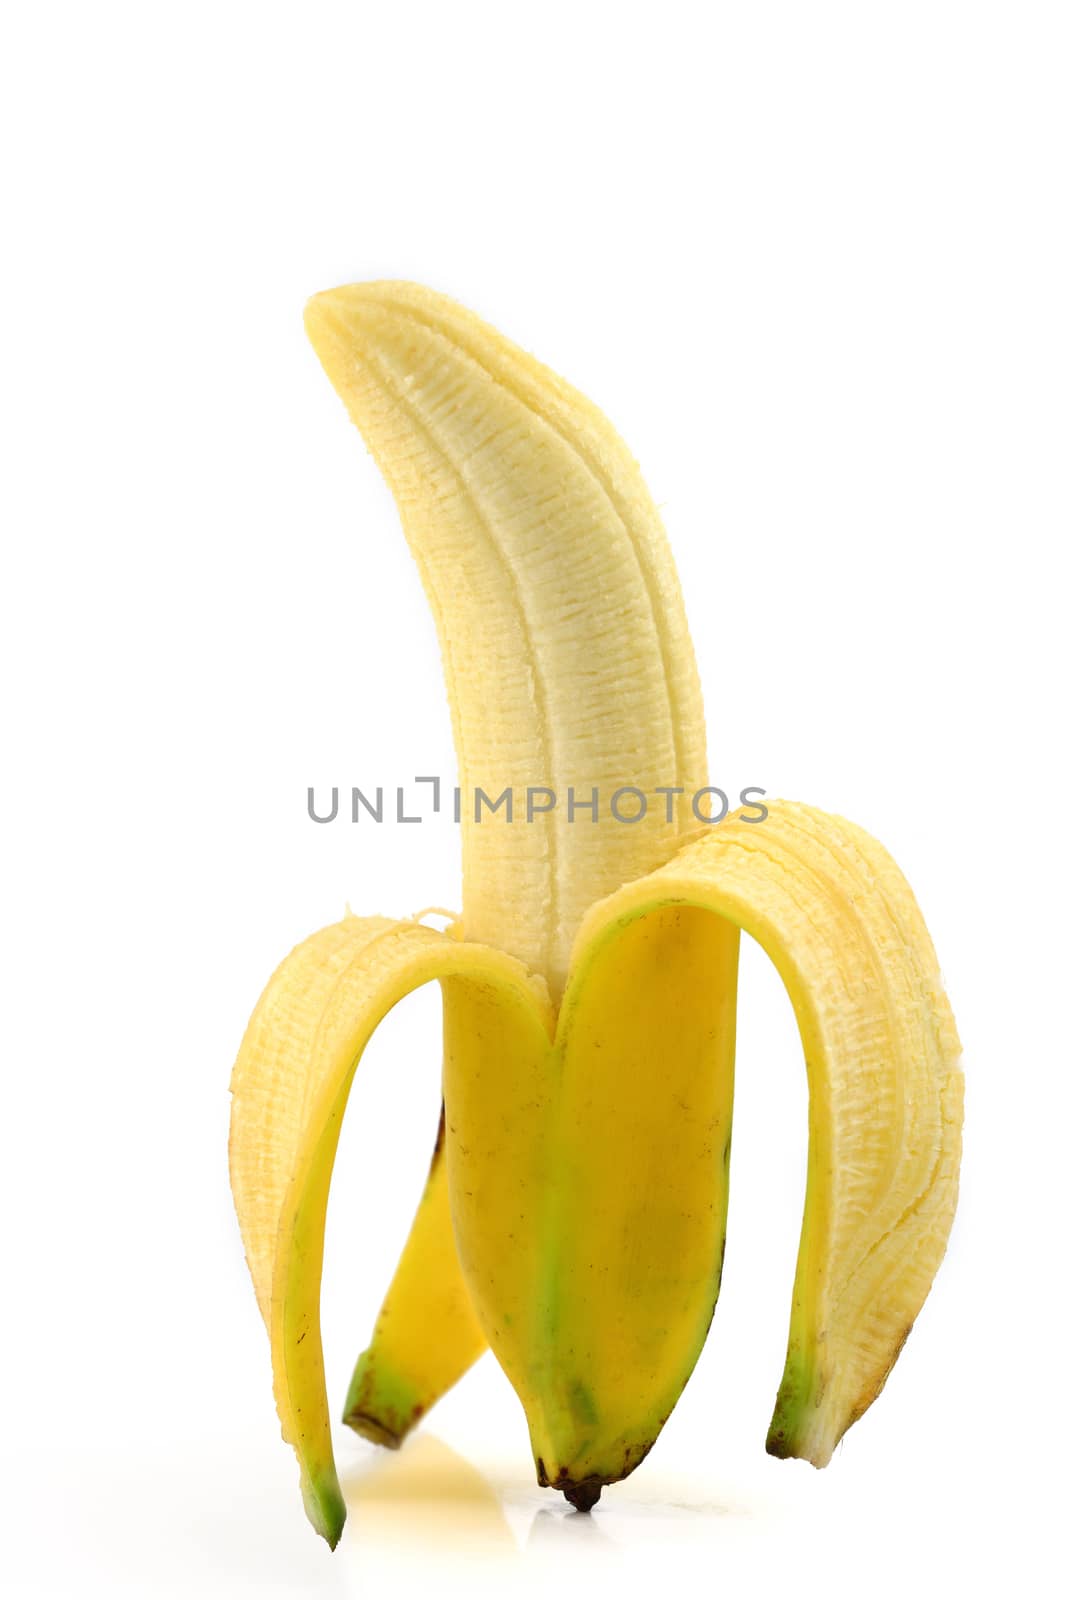 yellow banana isolated